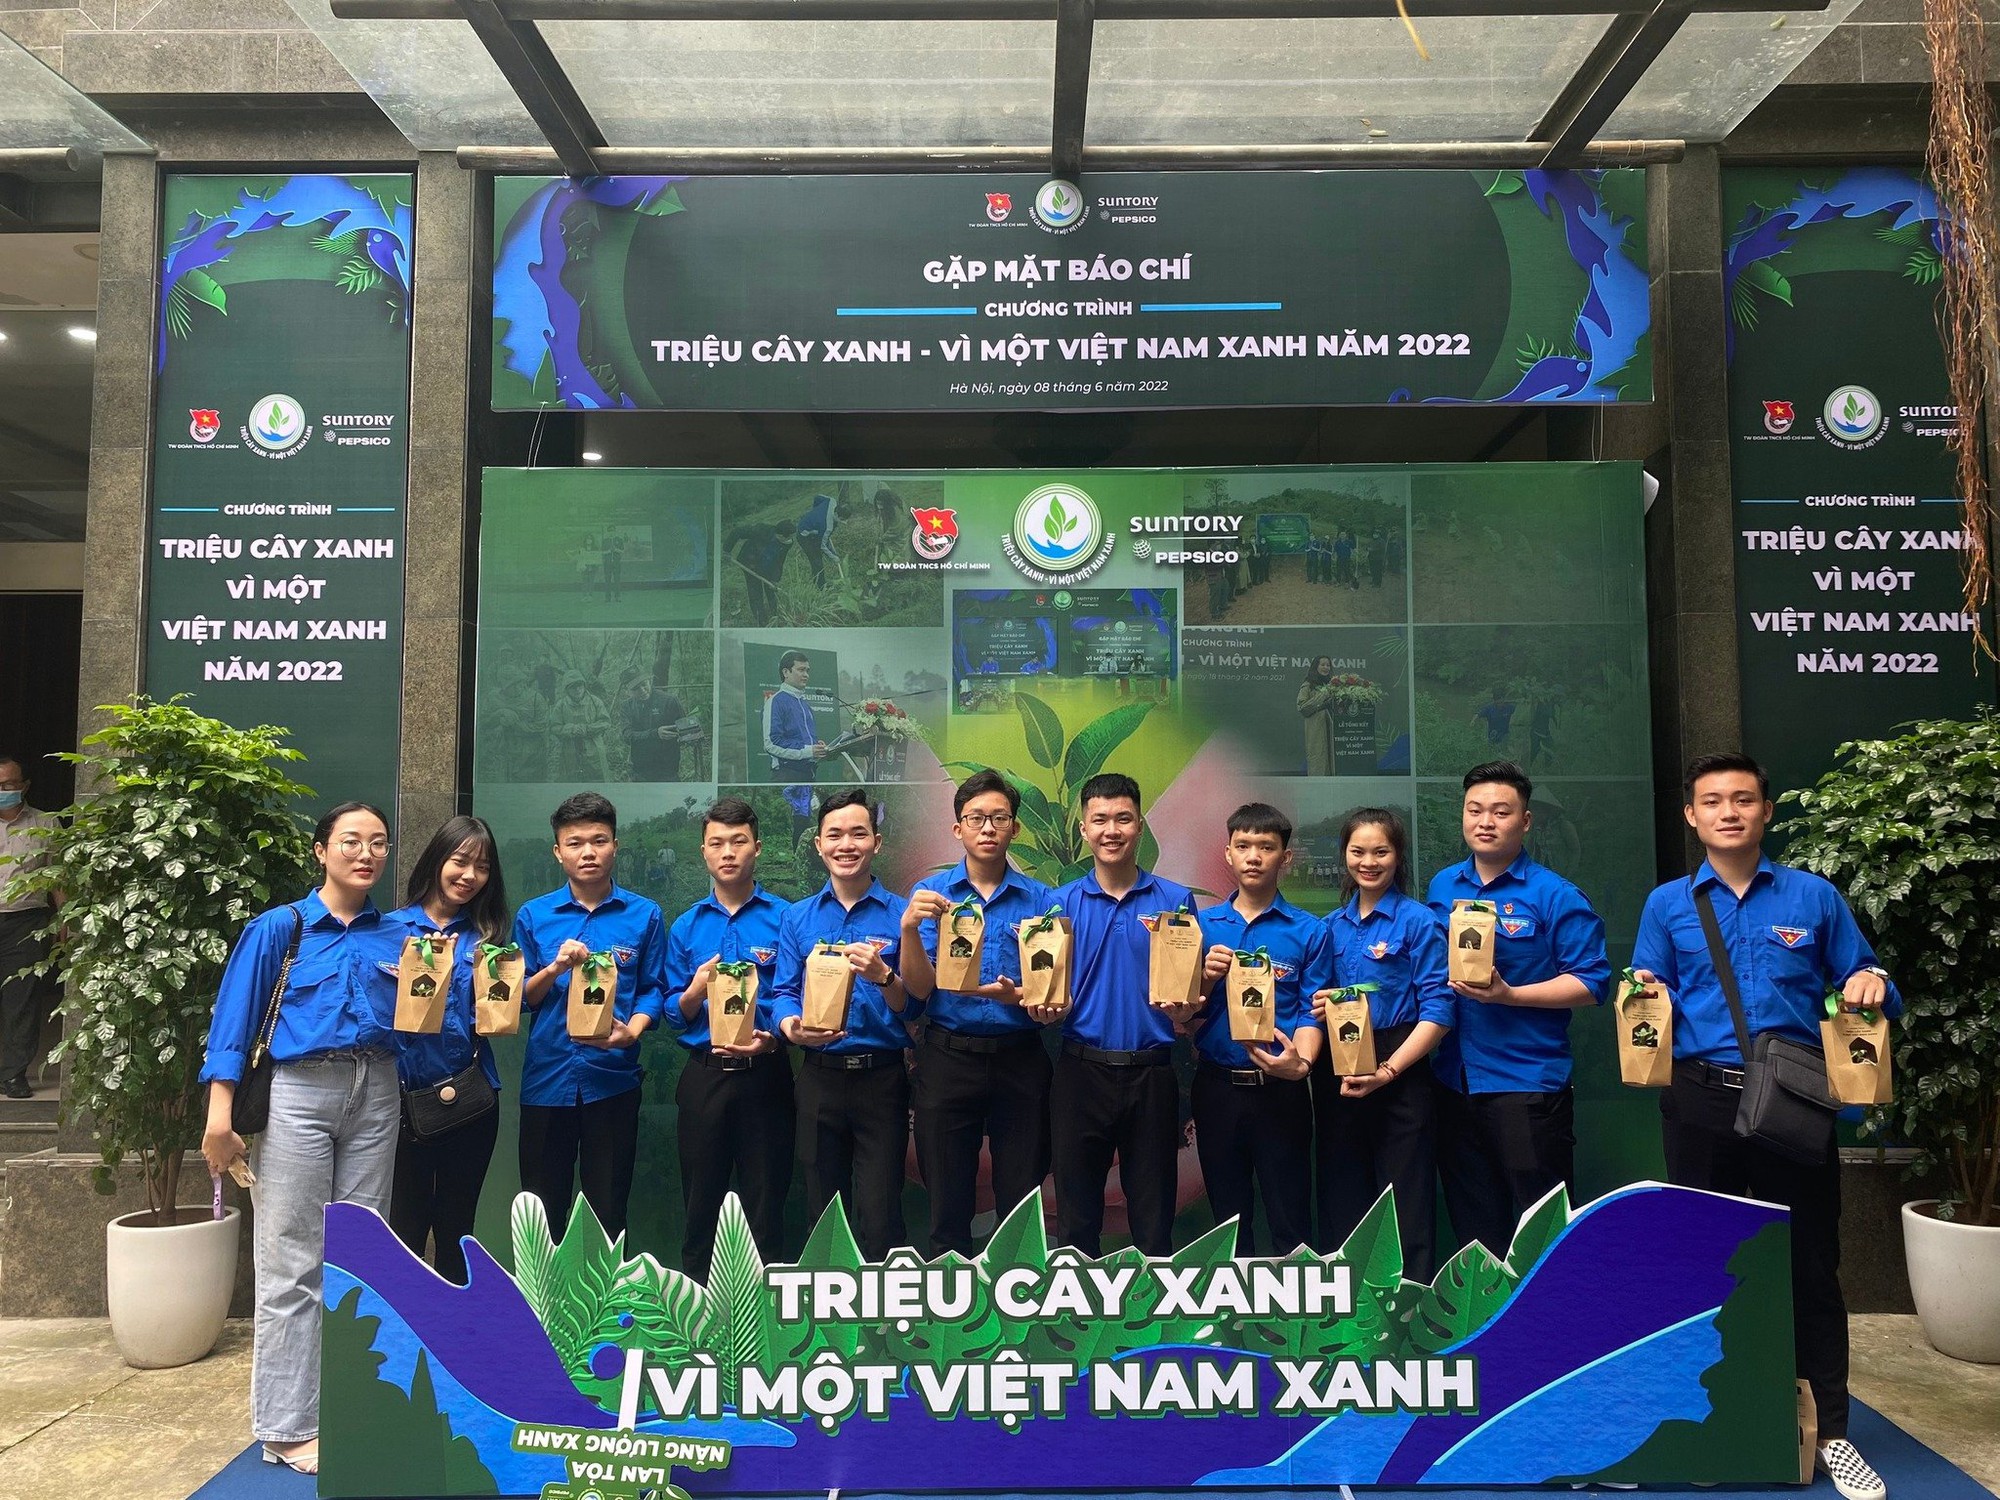 Suntory PepsiCo Việt Nam: Tiên phong đổi mới và phát triển bền vững - Ảnh 3.